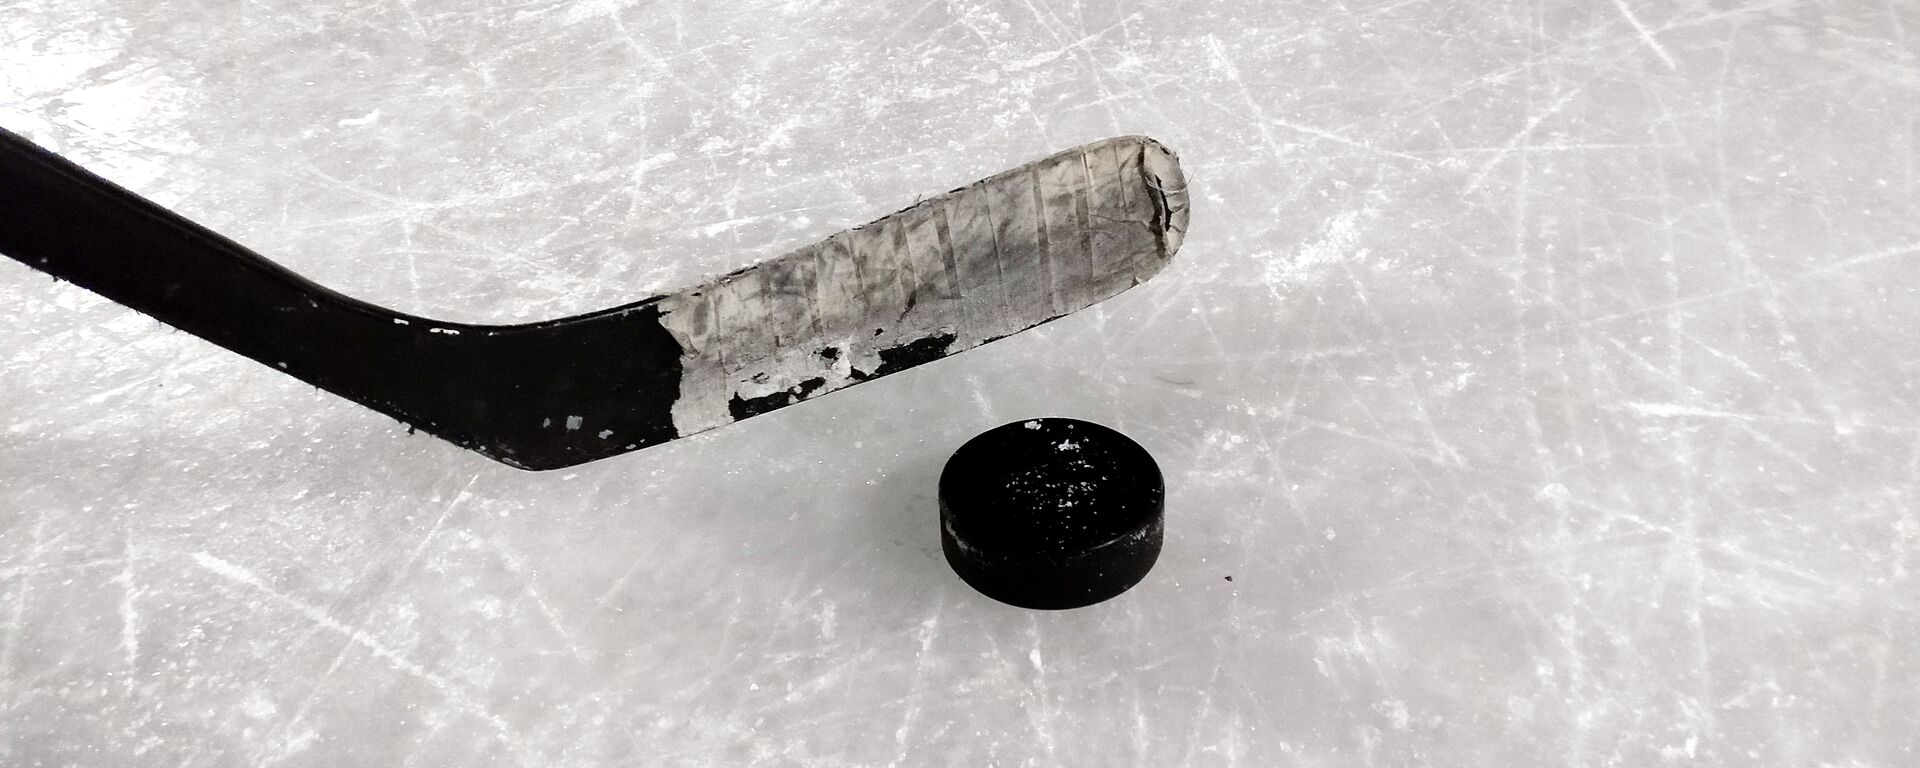 Un 'poc' y un palo de hockey sobre hielo - Sputnik Mundo, 1920, 29.12.2021